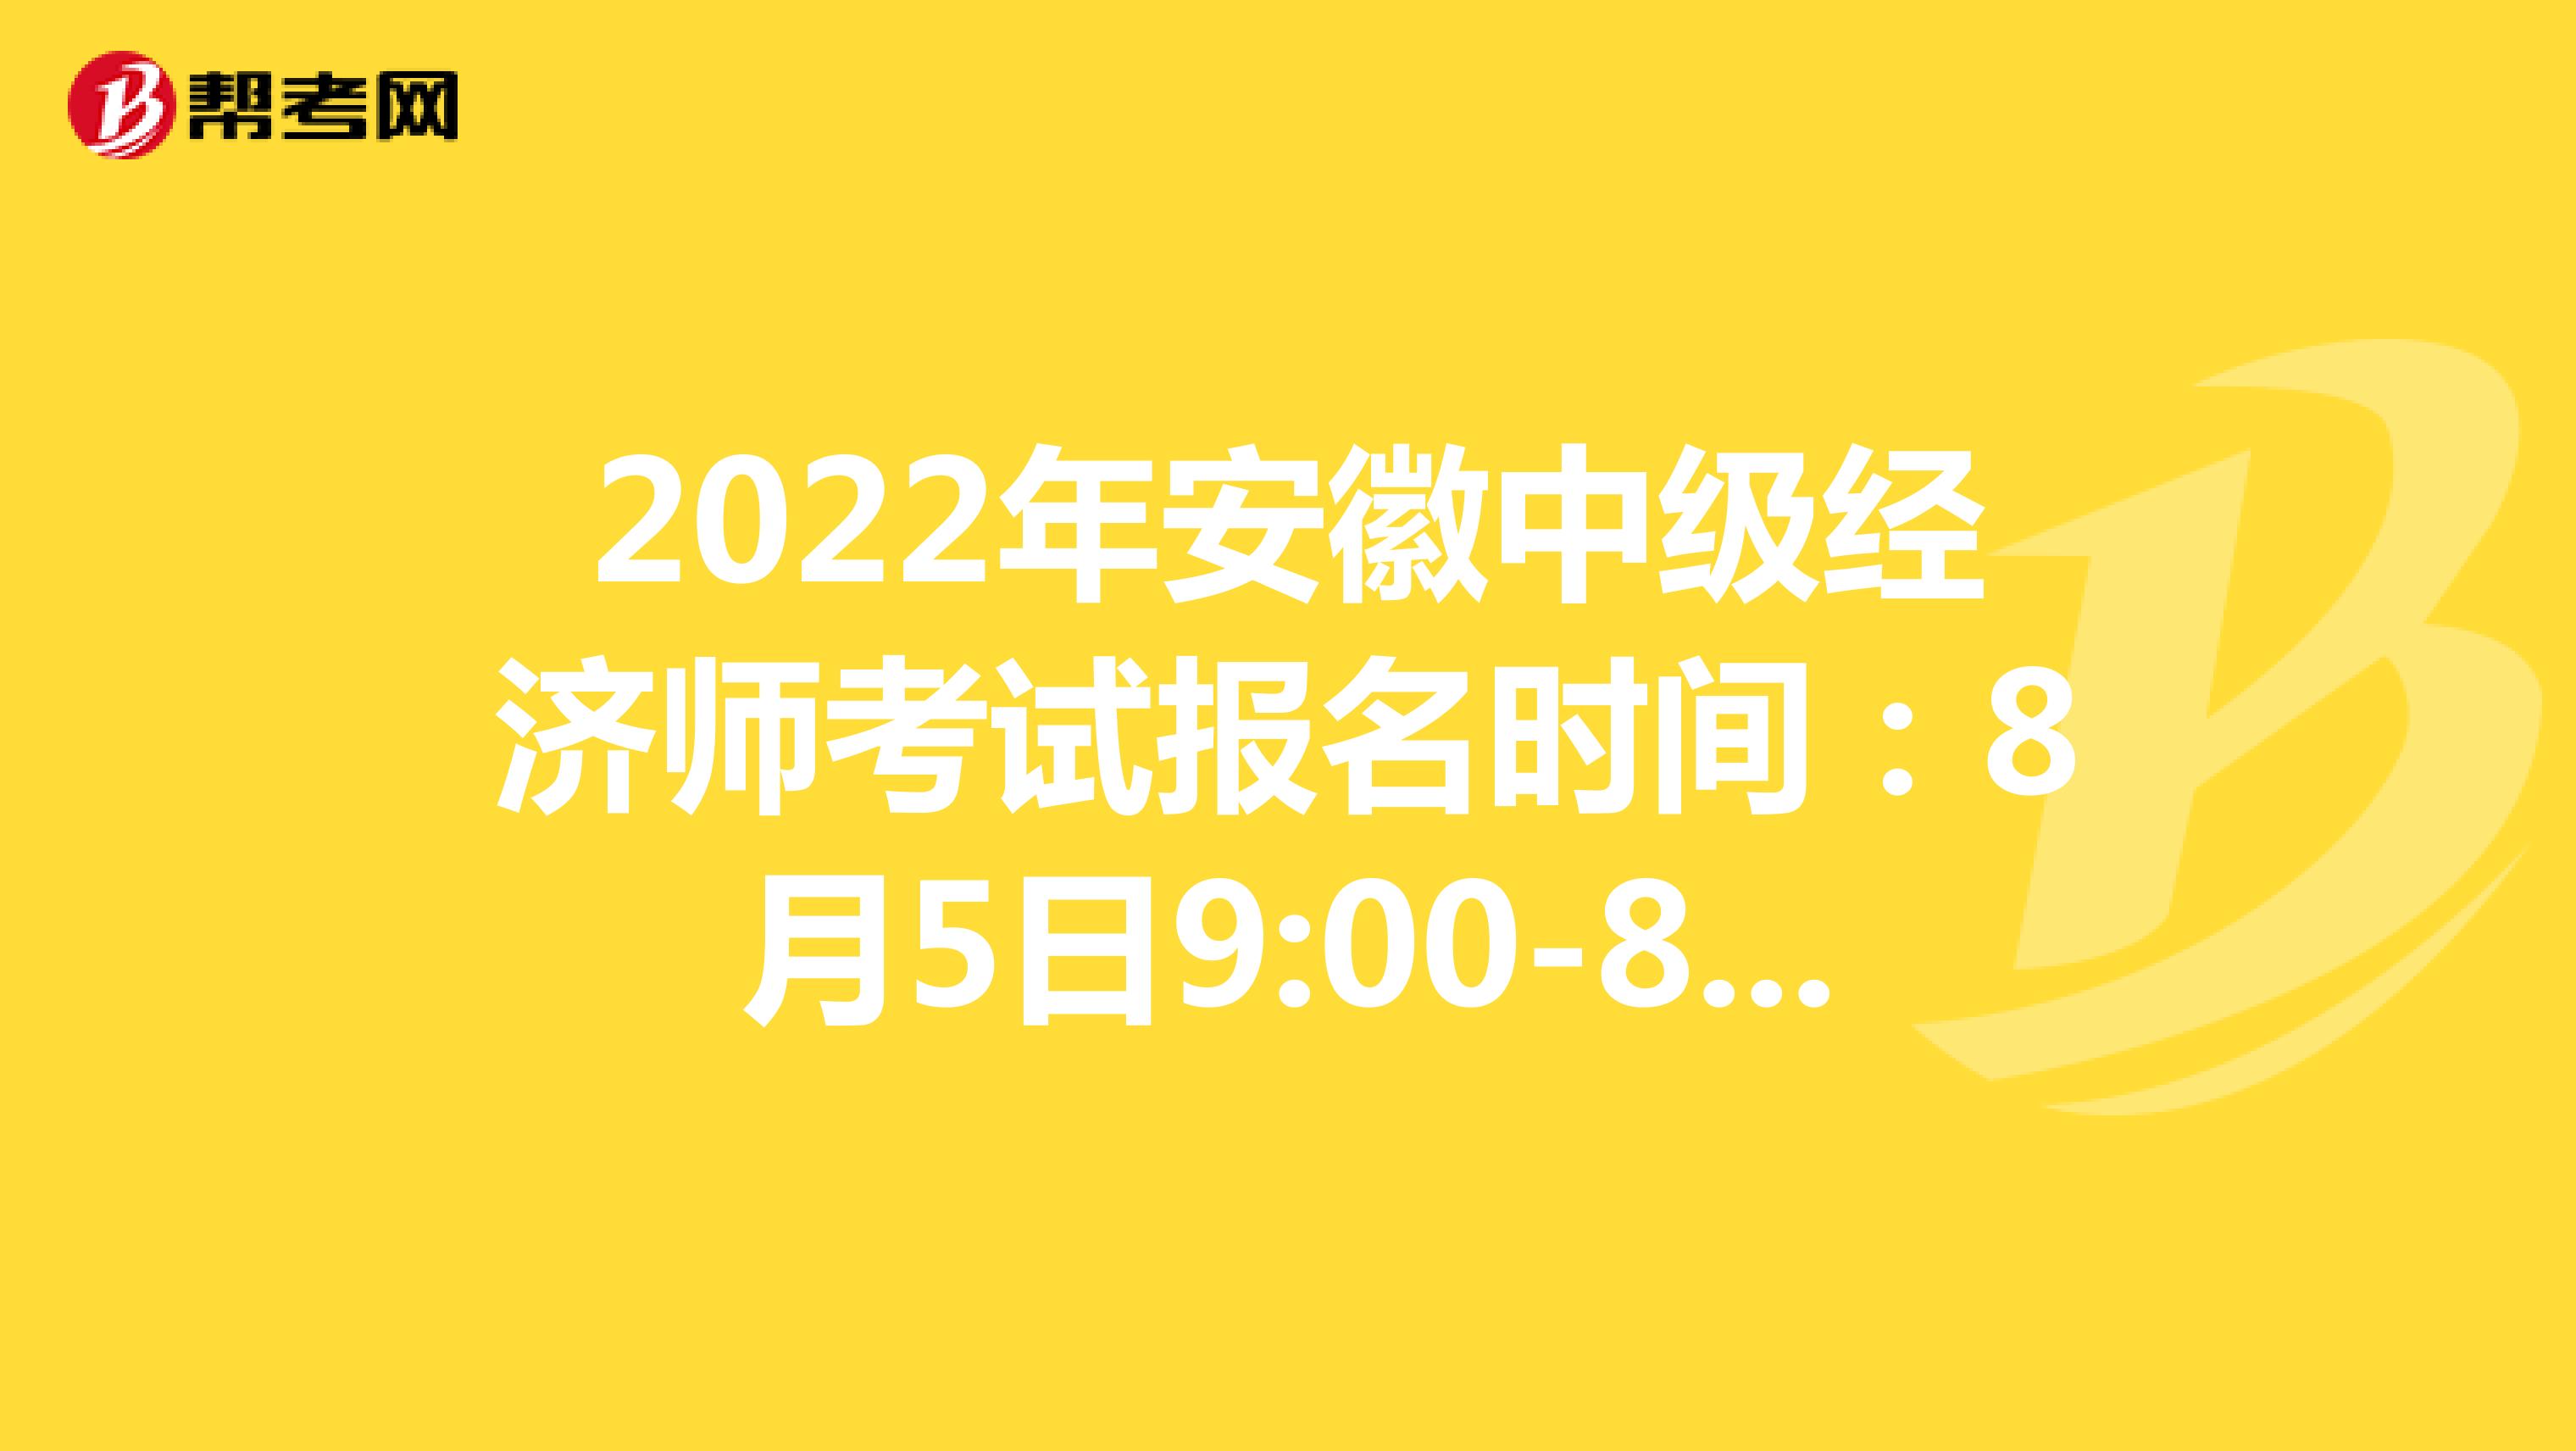 2022年安徽中級經濟師考試報名時間：8月5日9:00-8月15日16:00！